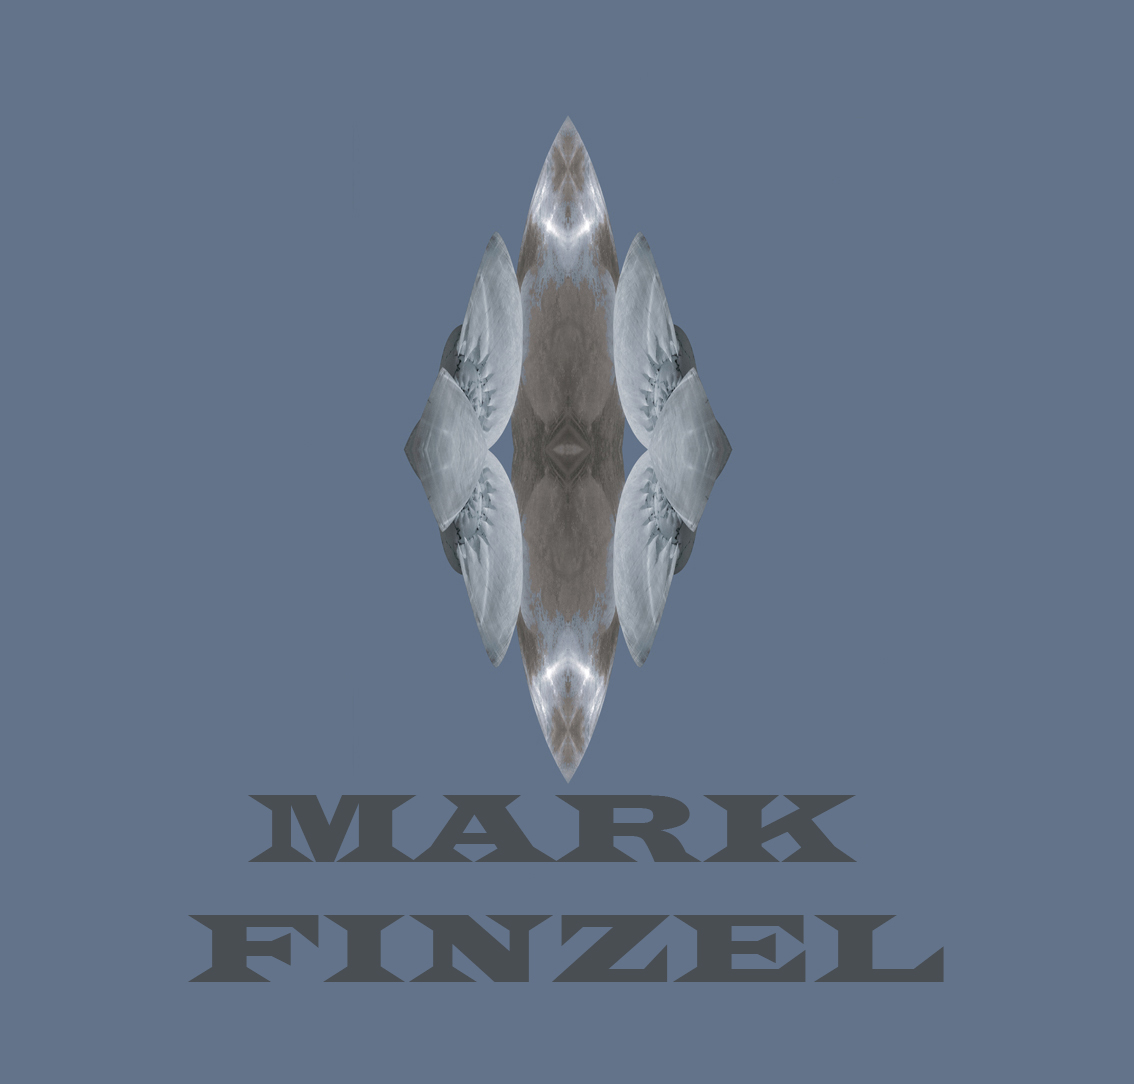 Mark Finzel Art and Design